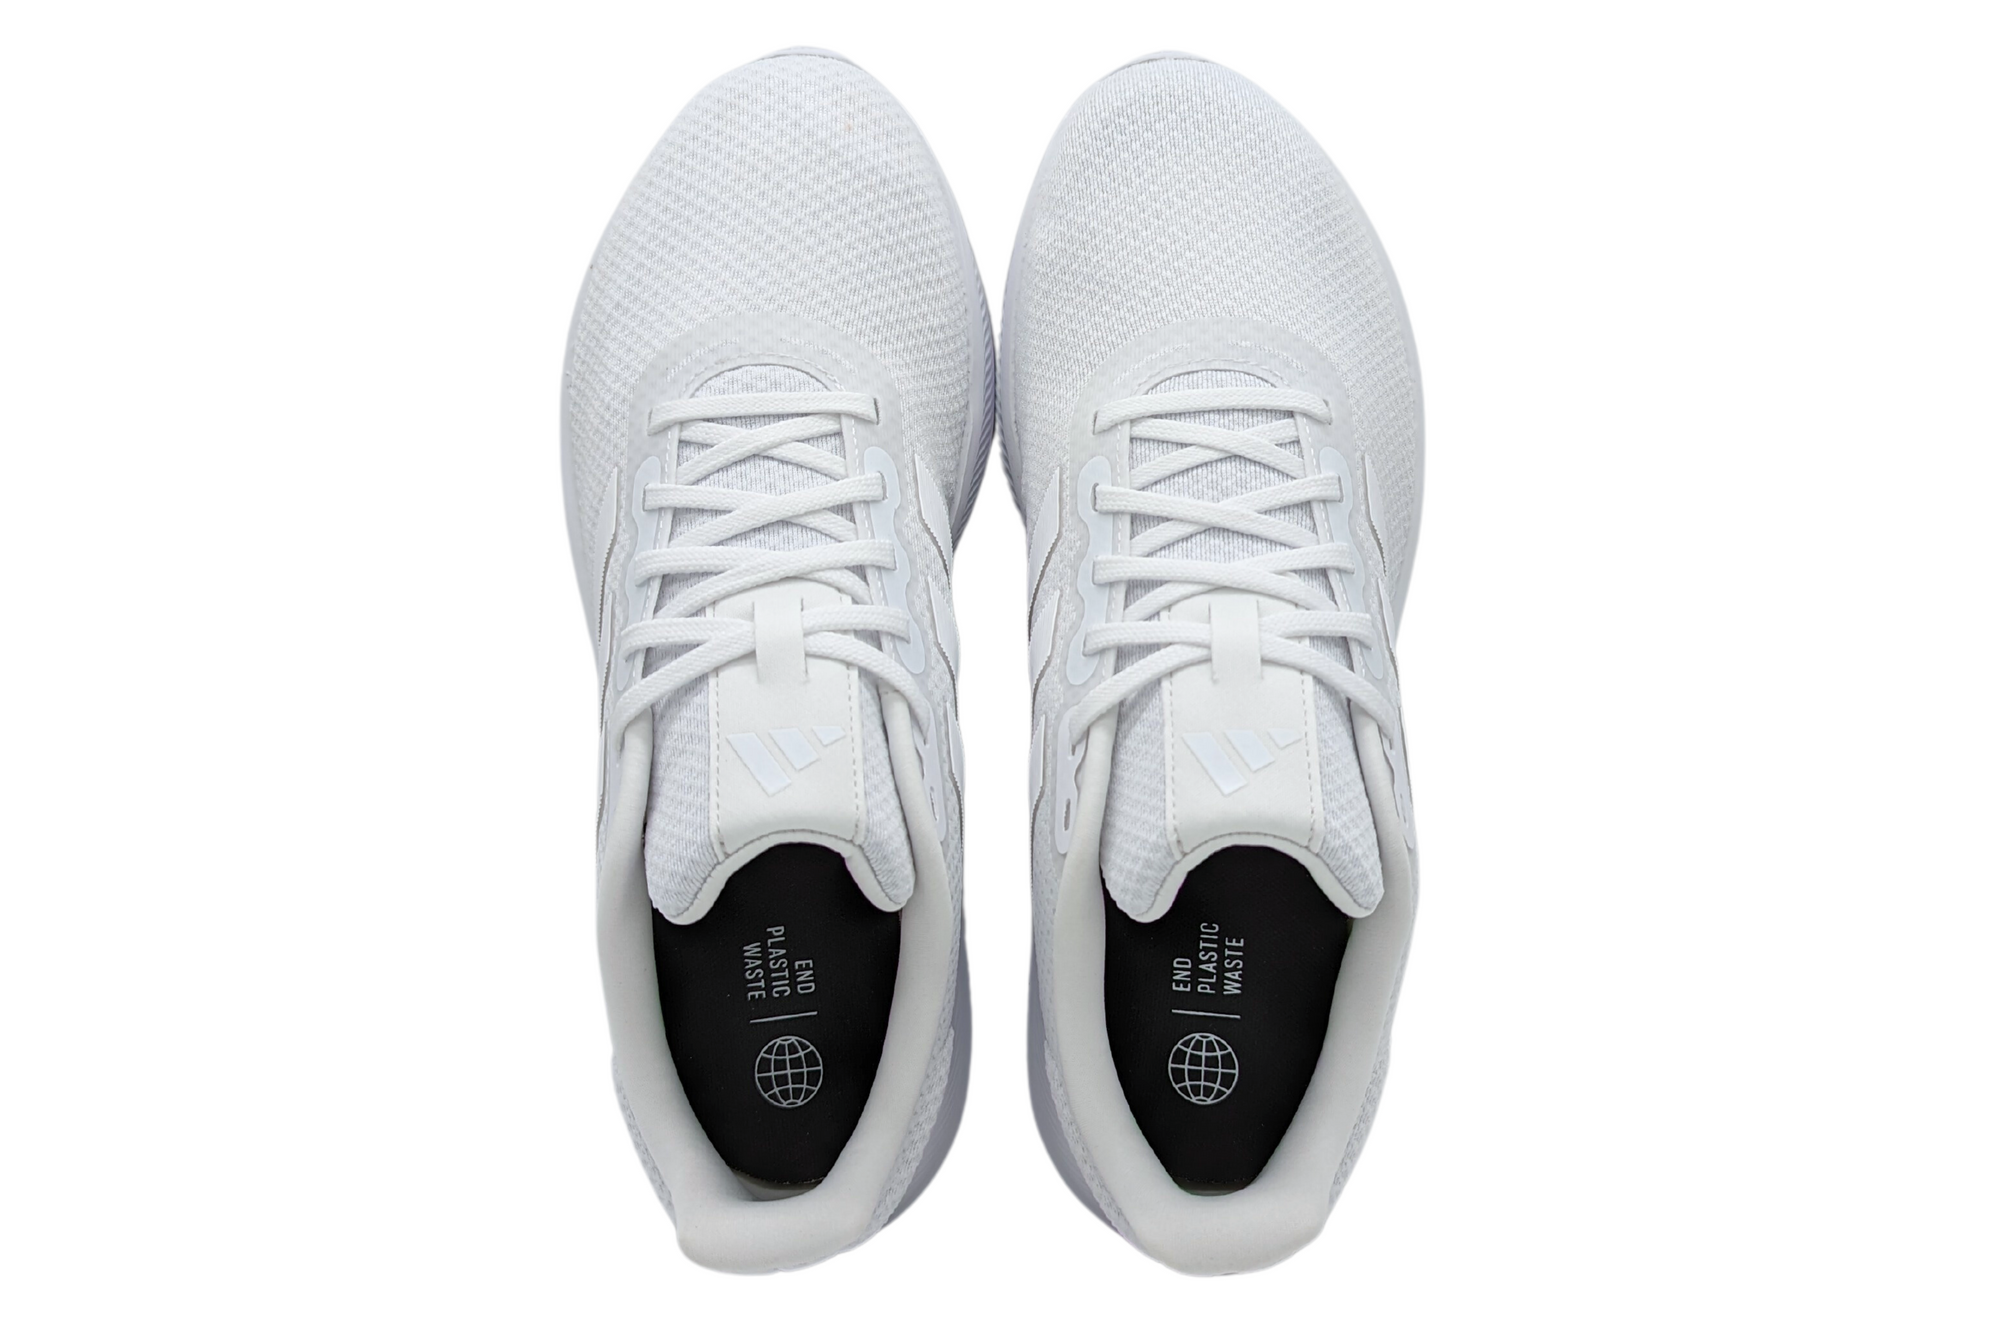 Zapatillas Hombre Adidas Runfalcon 3.0 Blanco - HP7546. ADIDAS